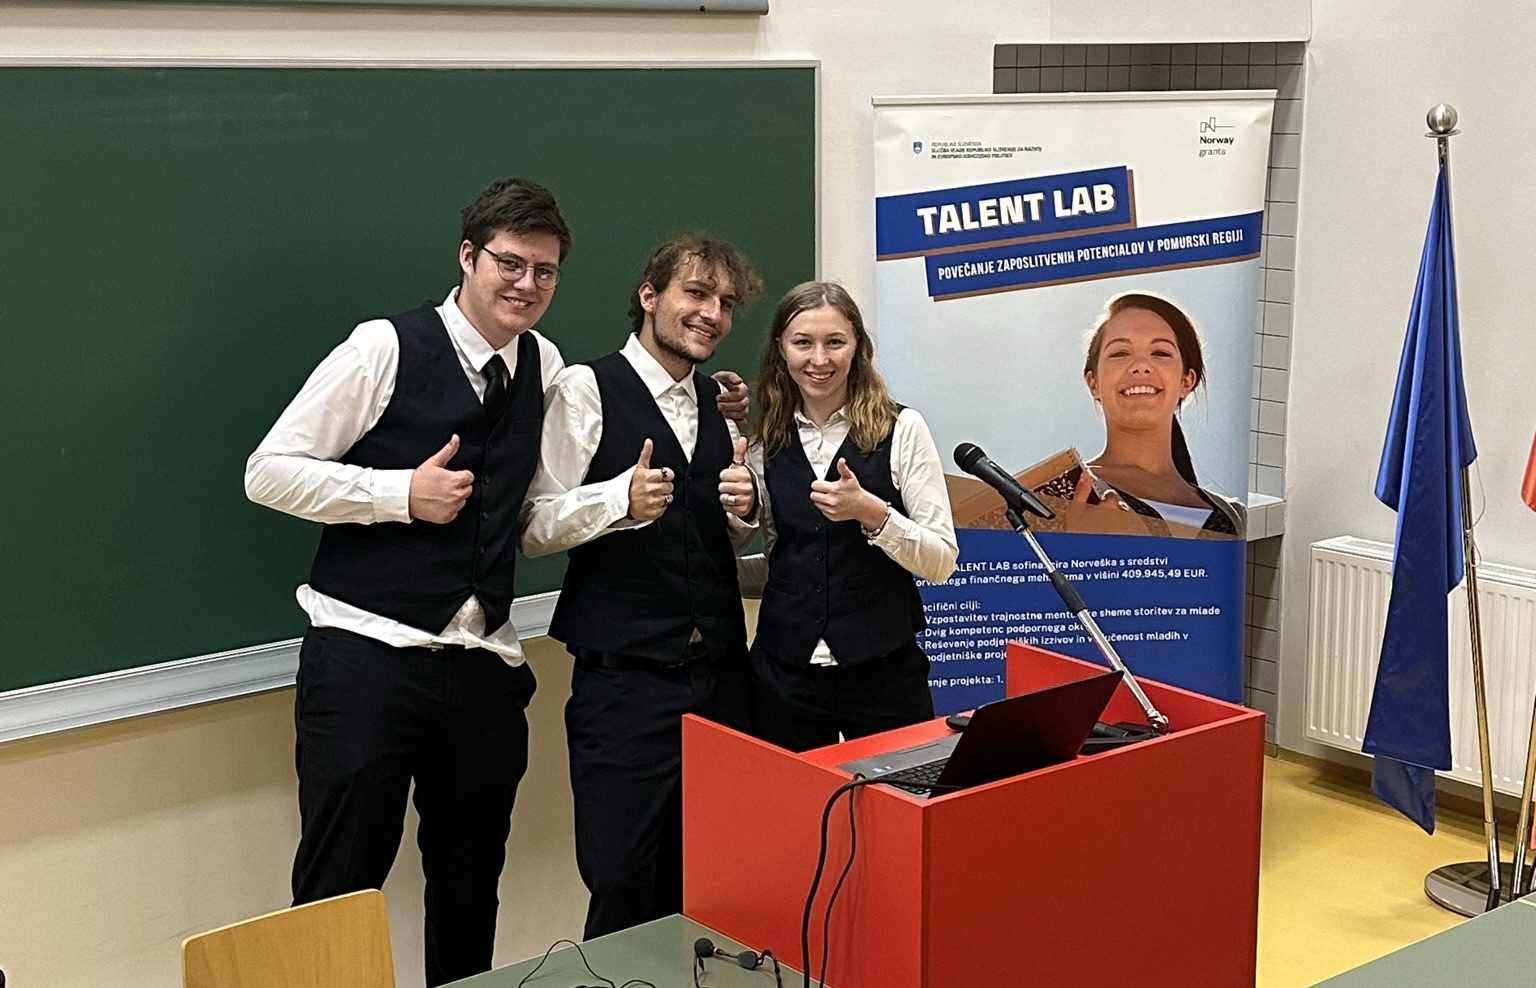 Trije dijaki za govorniškim odrom se smehljajo in kažejo stegnjen palec, zadaj je telena tabla in reklamno stojalo za projekt Talent LAB